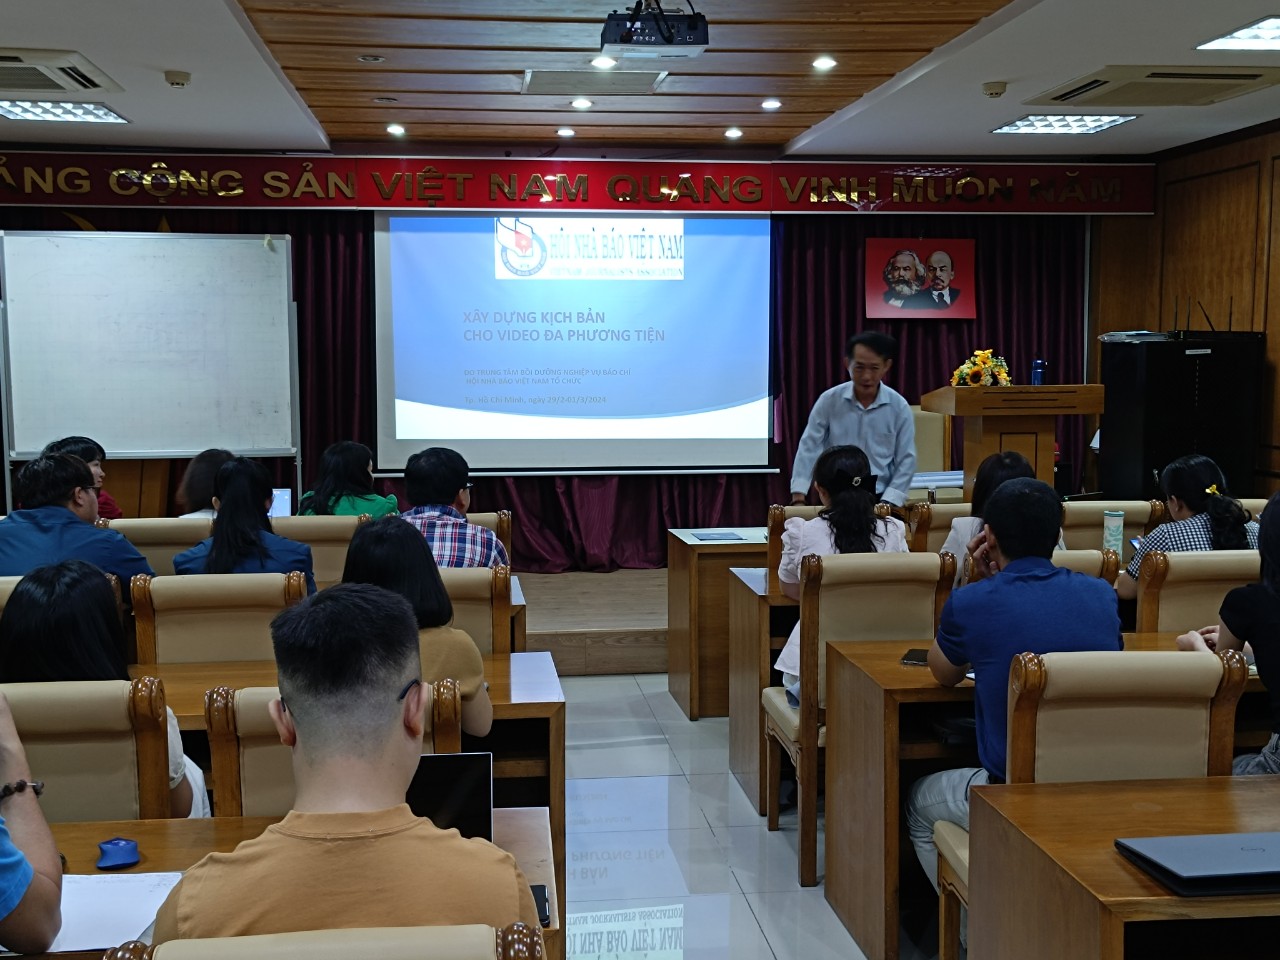 Trung tâm Bồi dưỡng nghiệp vụ báo chí – Hội Nhà báo Việt Nam đã tổ chức khóa tập huấn “Xây dựng kịch bản cho video đa phương tiện” tại TP.HCM